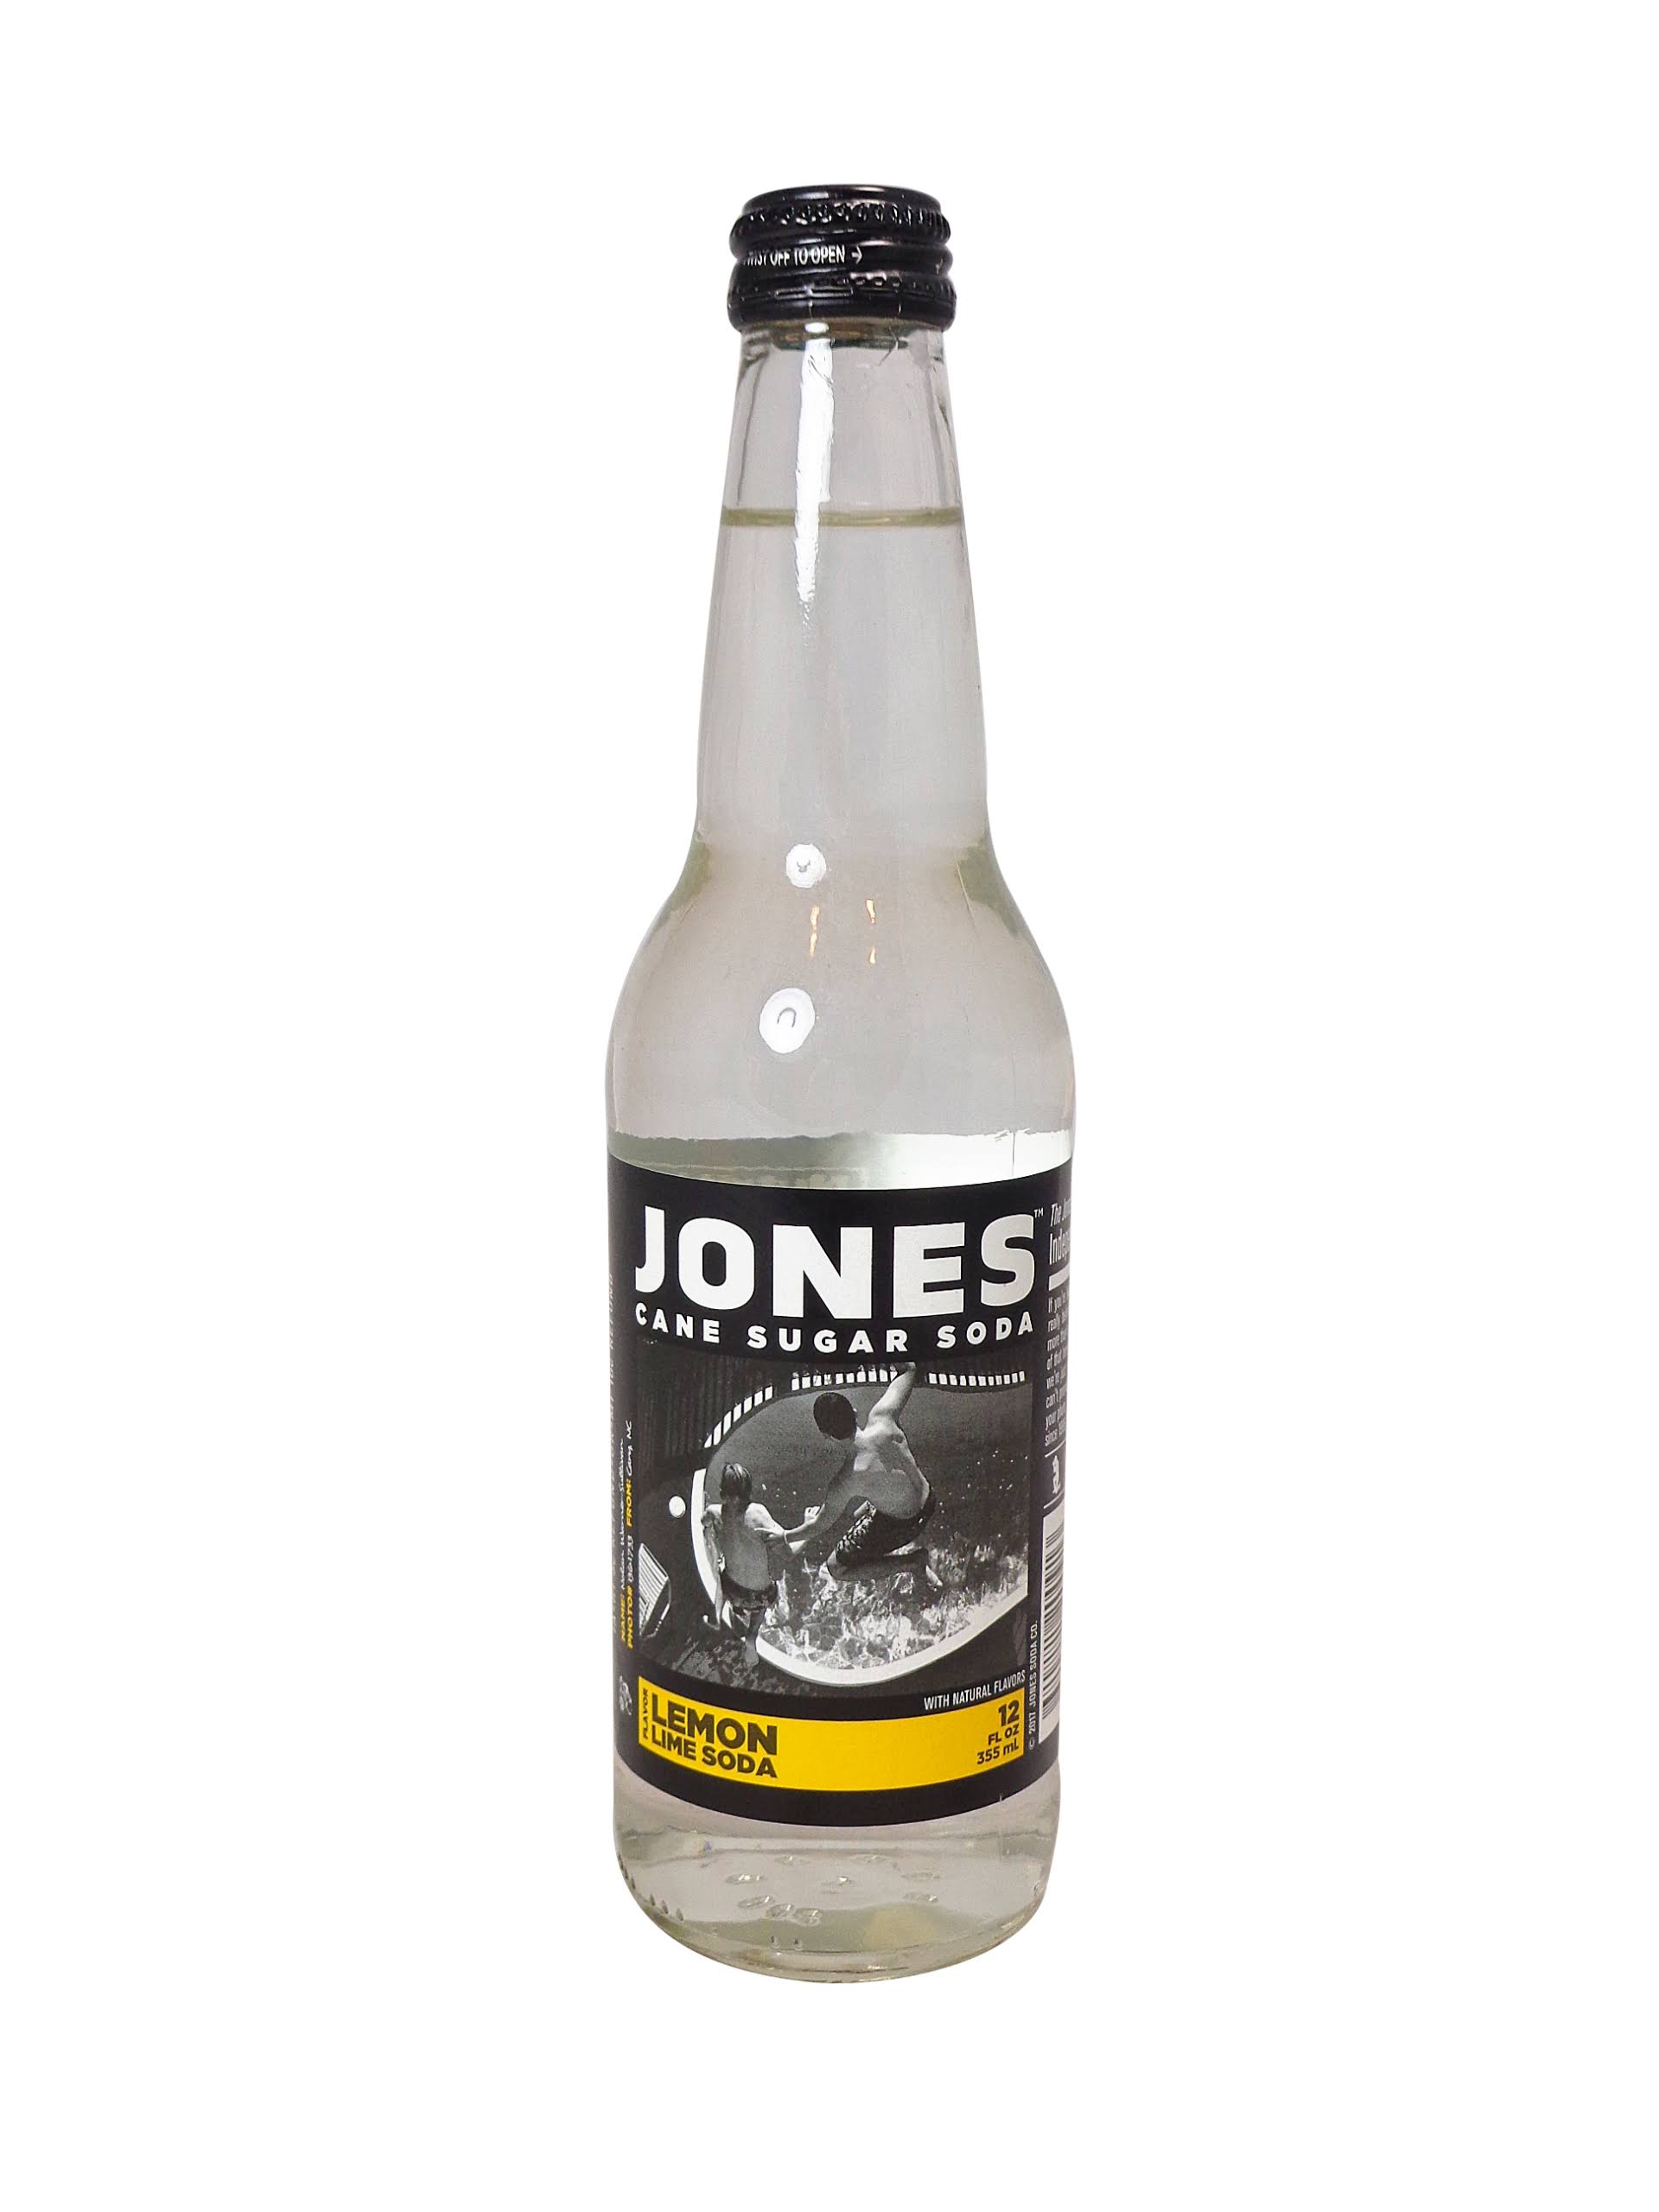 Jones Lemon Lime Soda